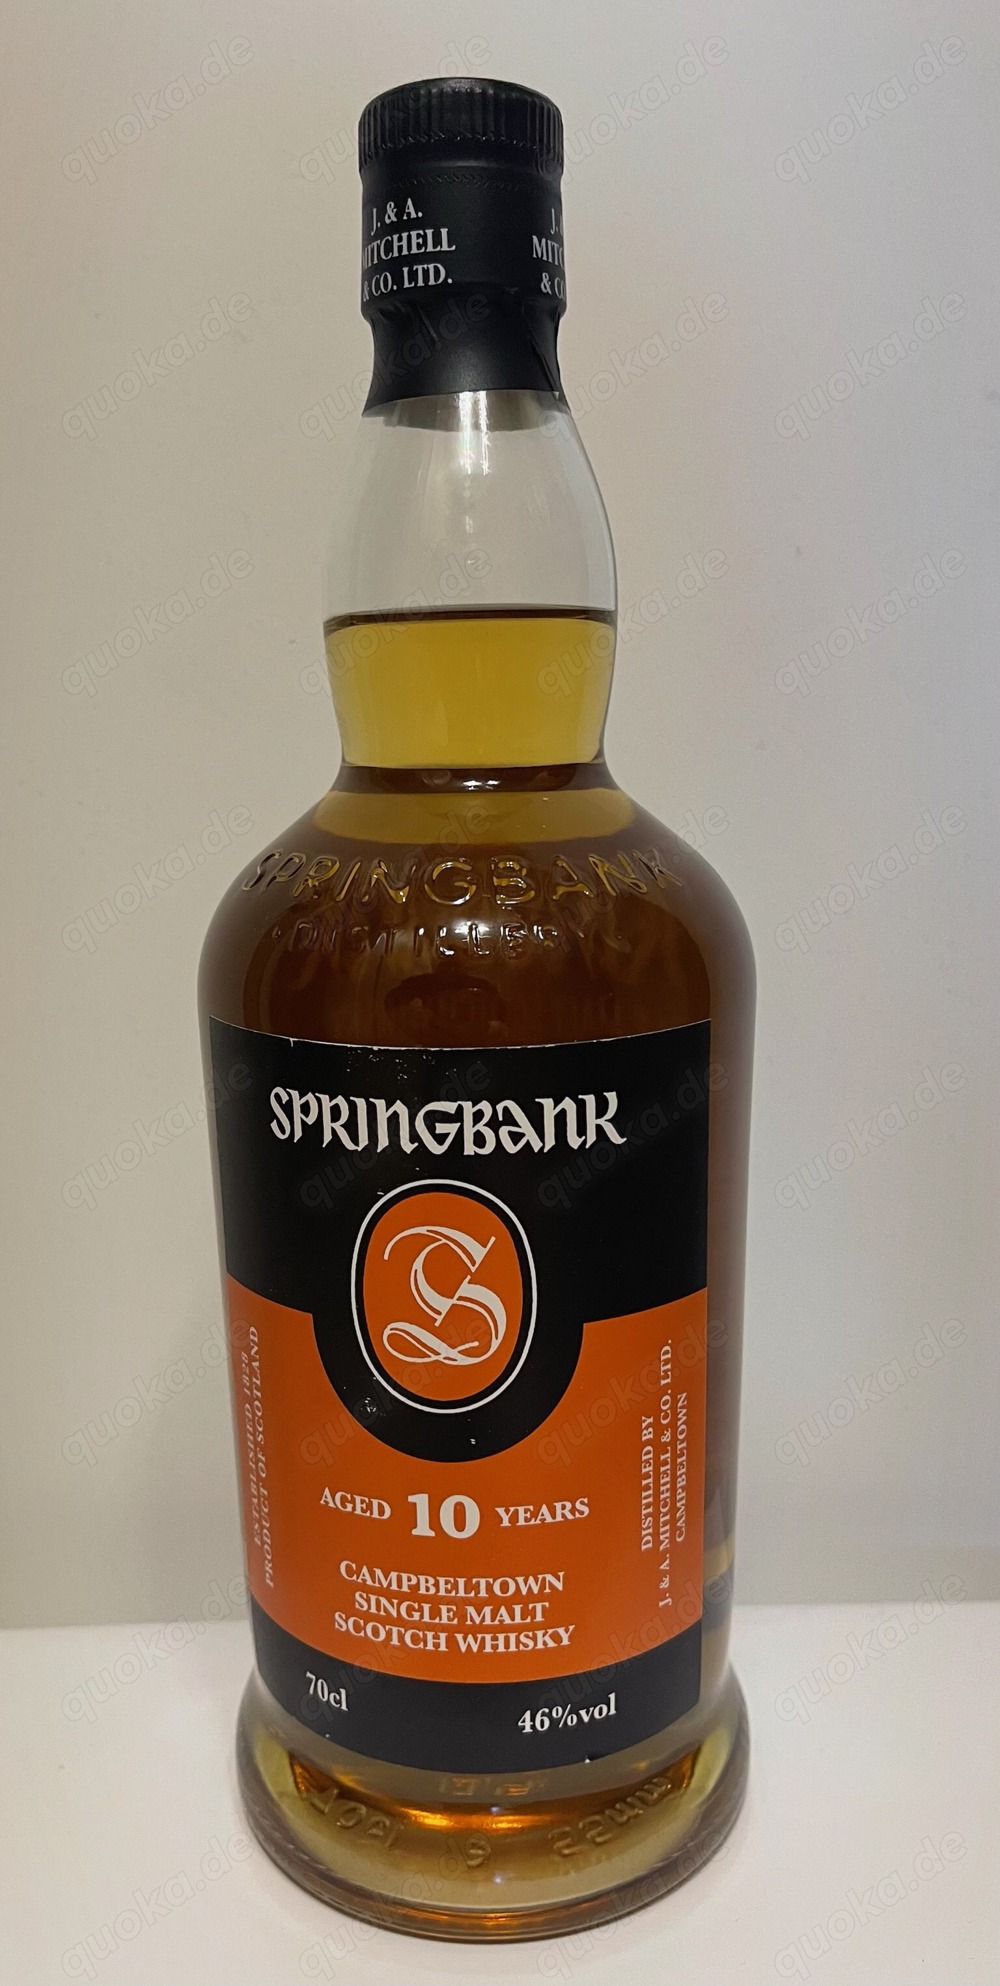 Springbank 10 jahre 46% 0,7l campbeltown Scotch Whisky Single malt